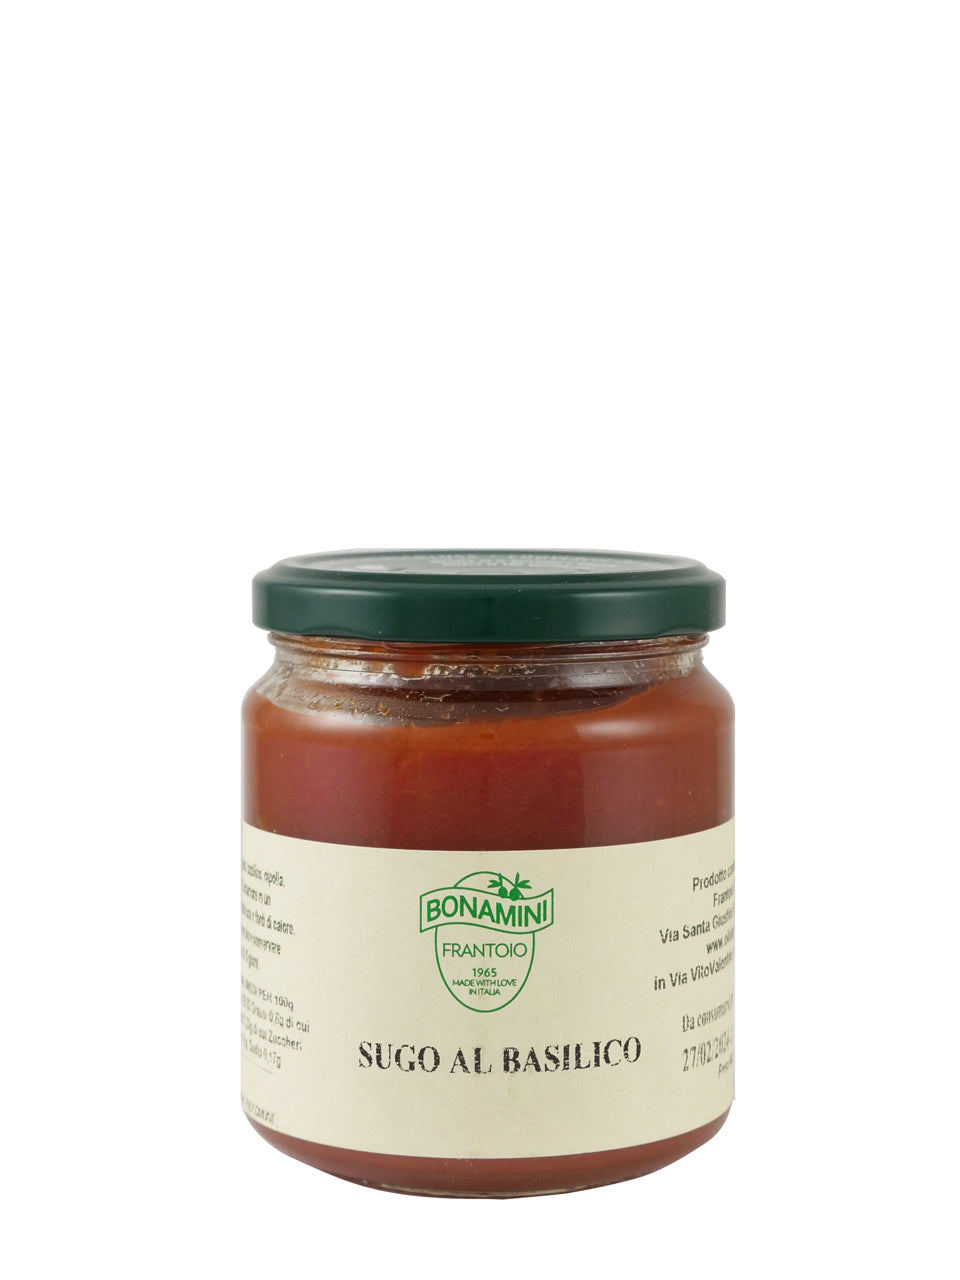 Frantoio Bonamini Tomato Sauce with Basil